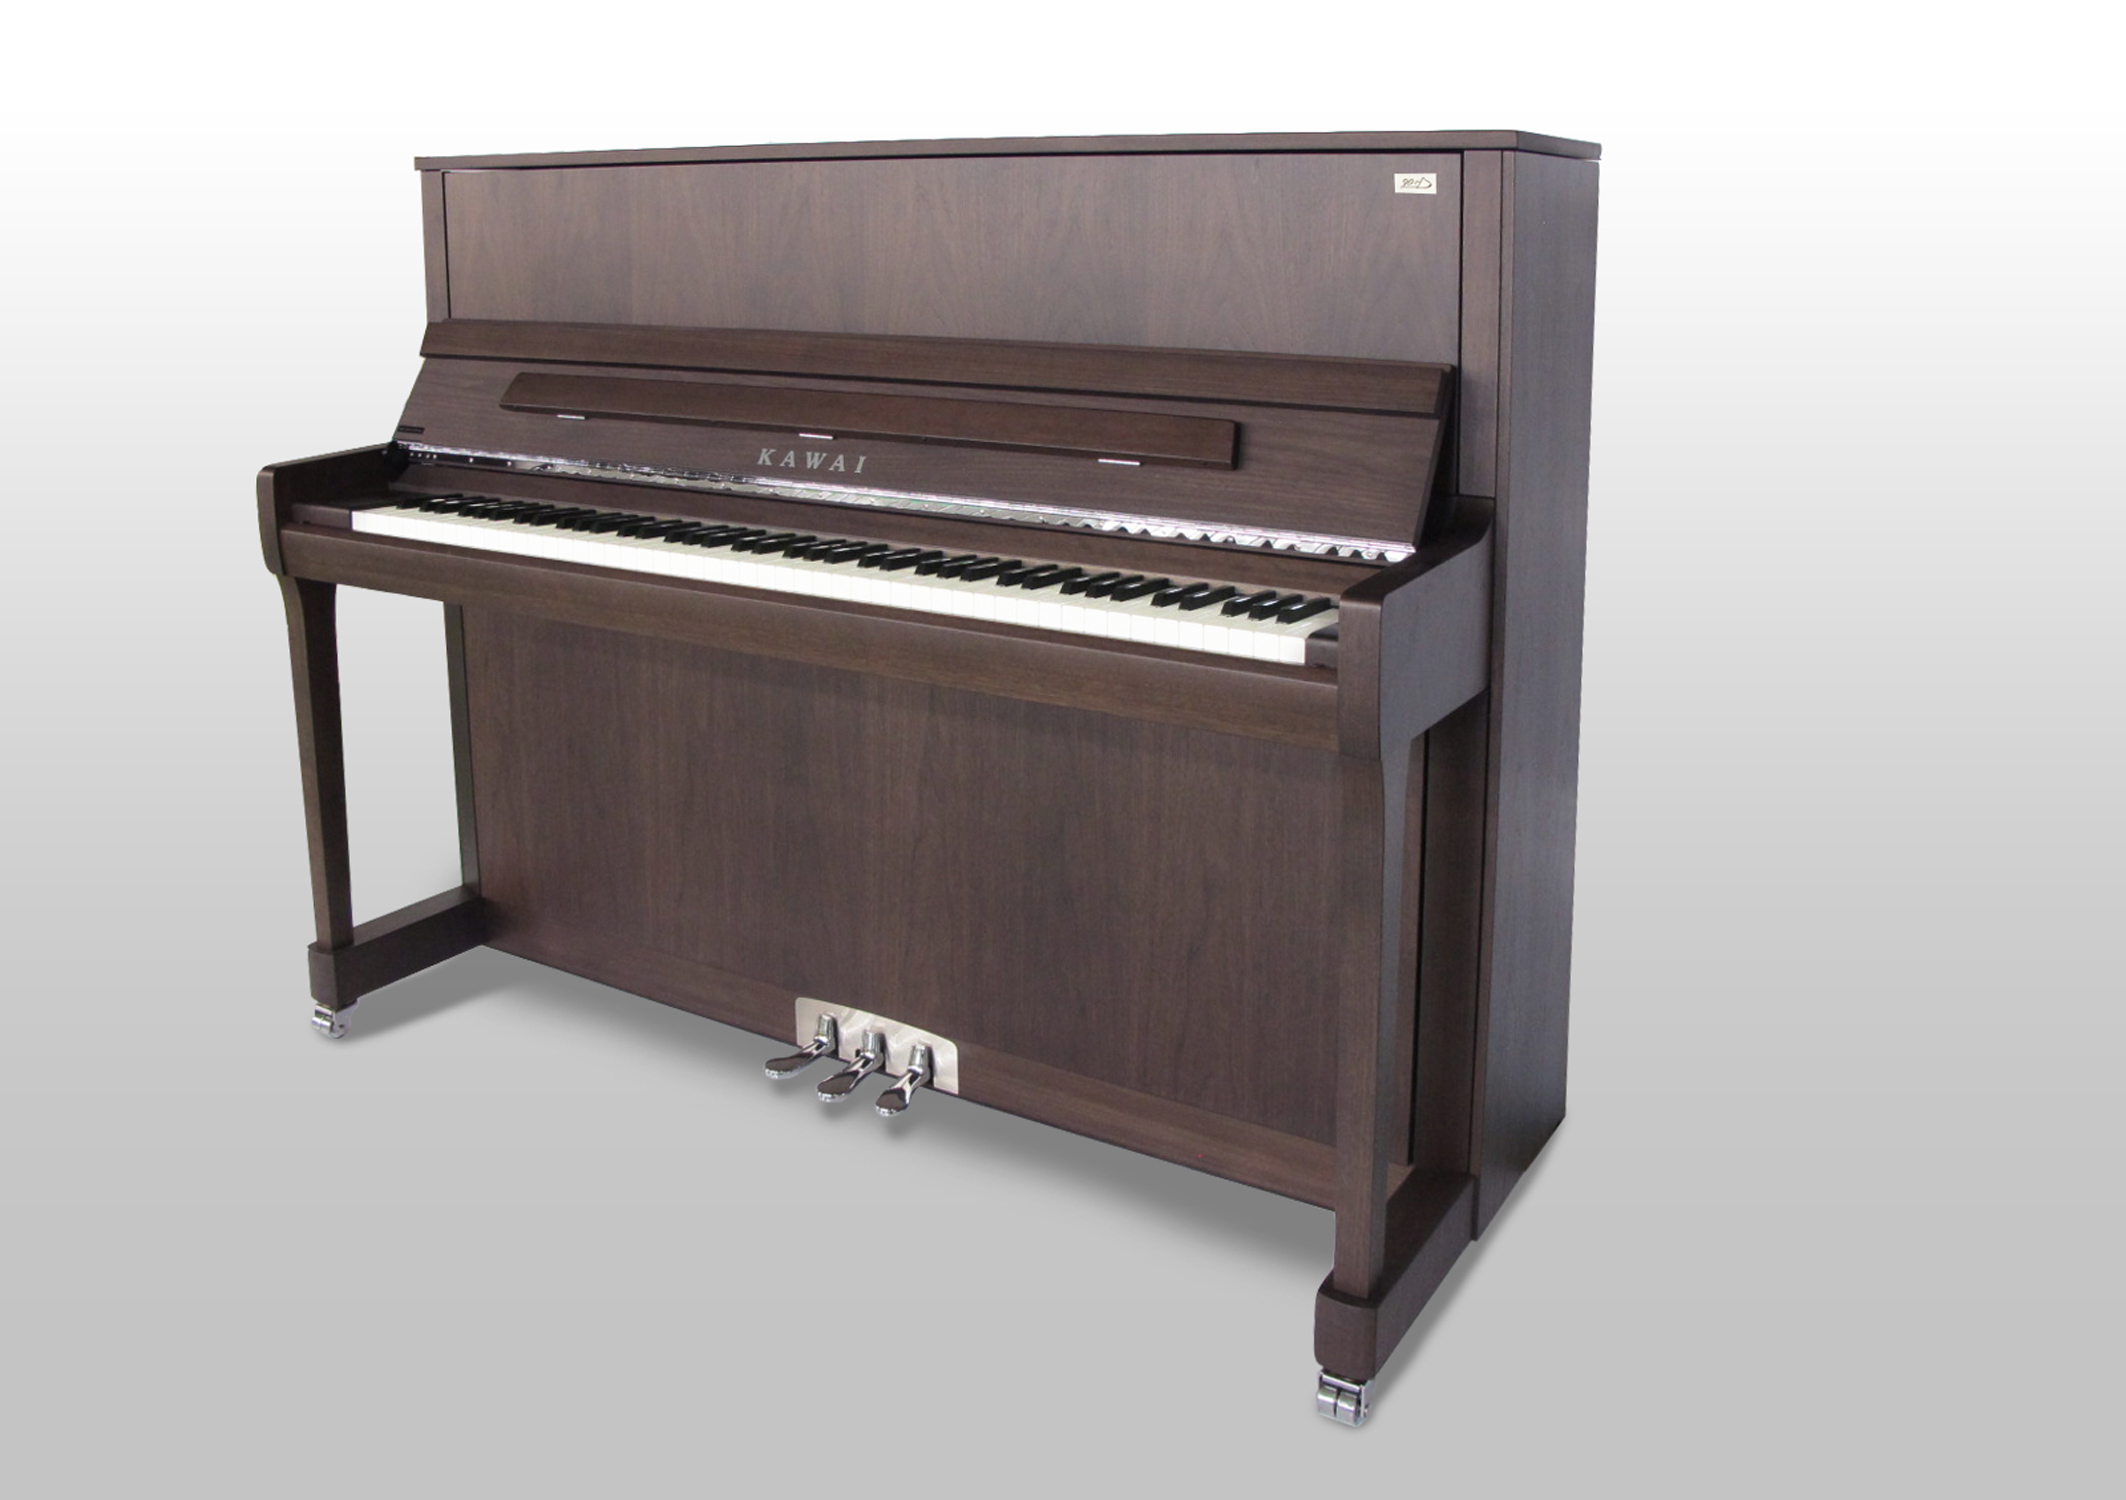 河合楽器製作所創立90周年記念モデル グランドピアノ・アップライト 